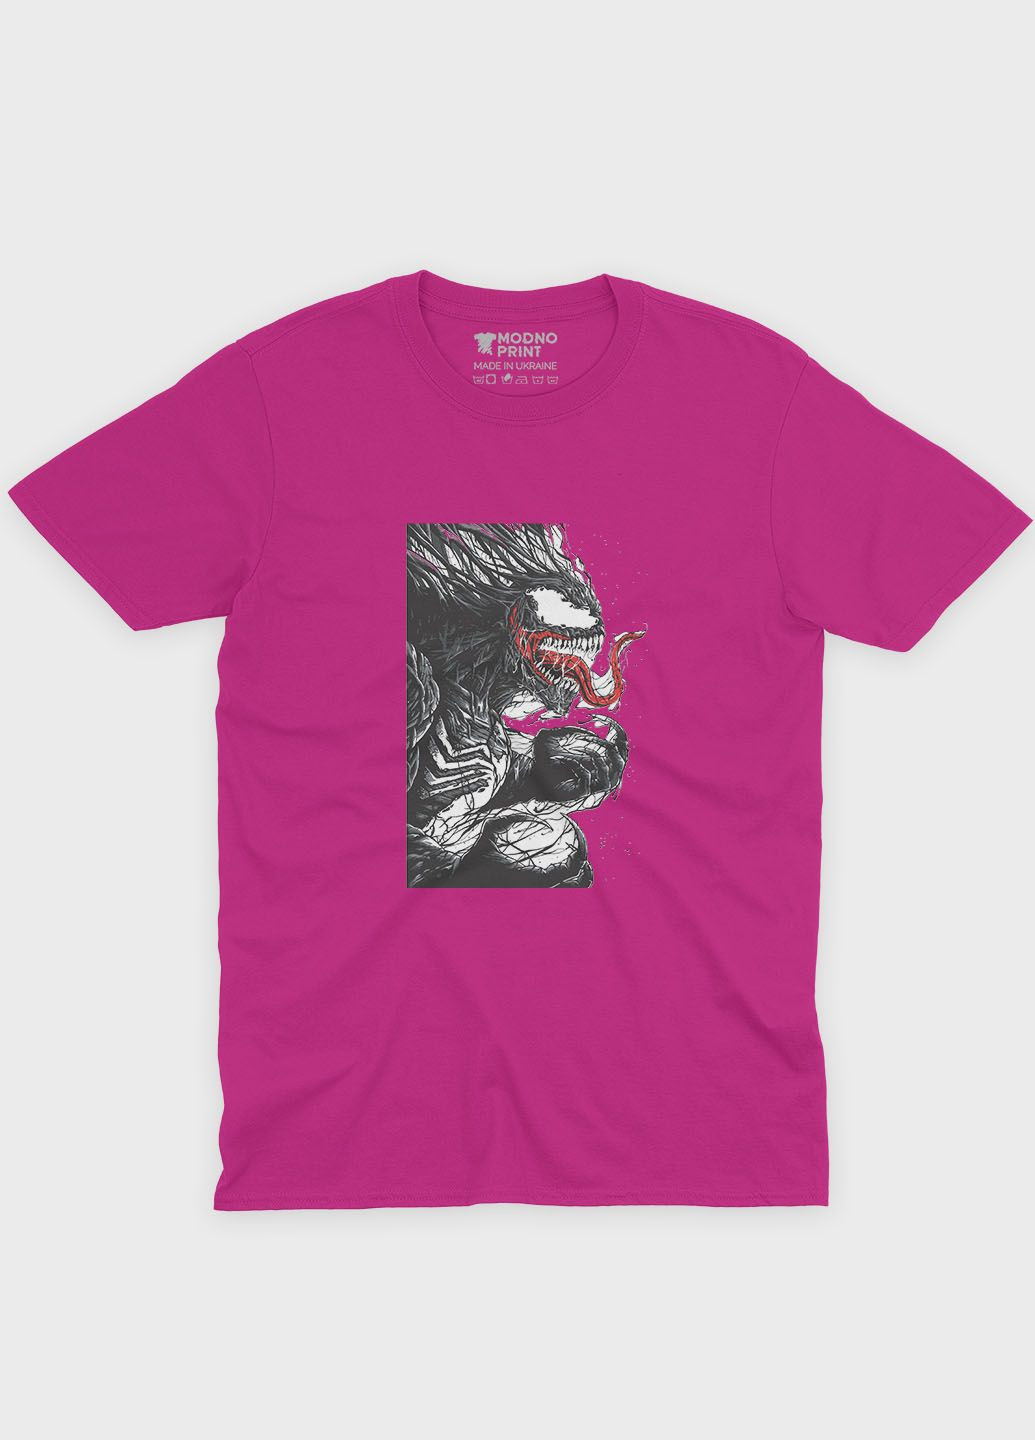 Розовая демисезонная футболка для девочки с принтом супервора - веном (ts001-1-fuxj-006-013-004-g) Modno